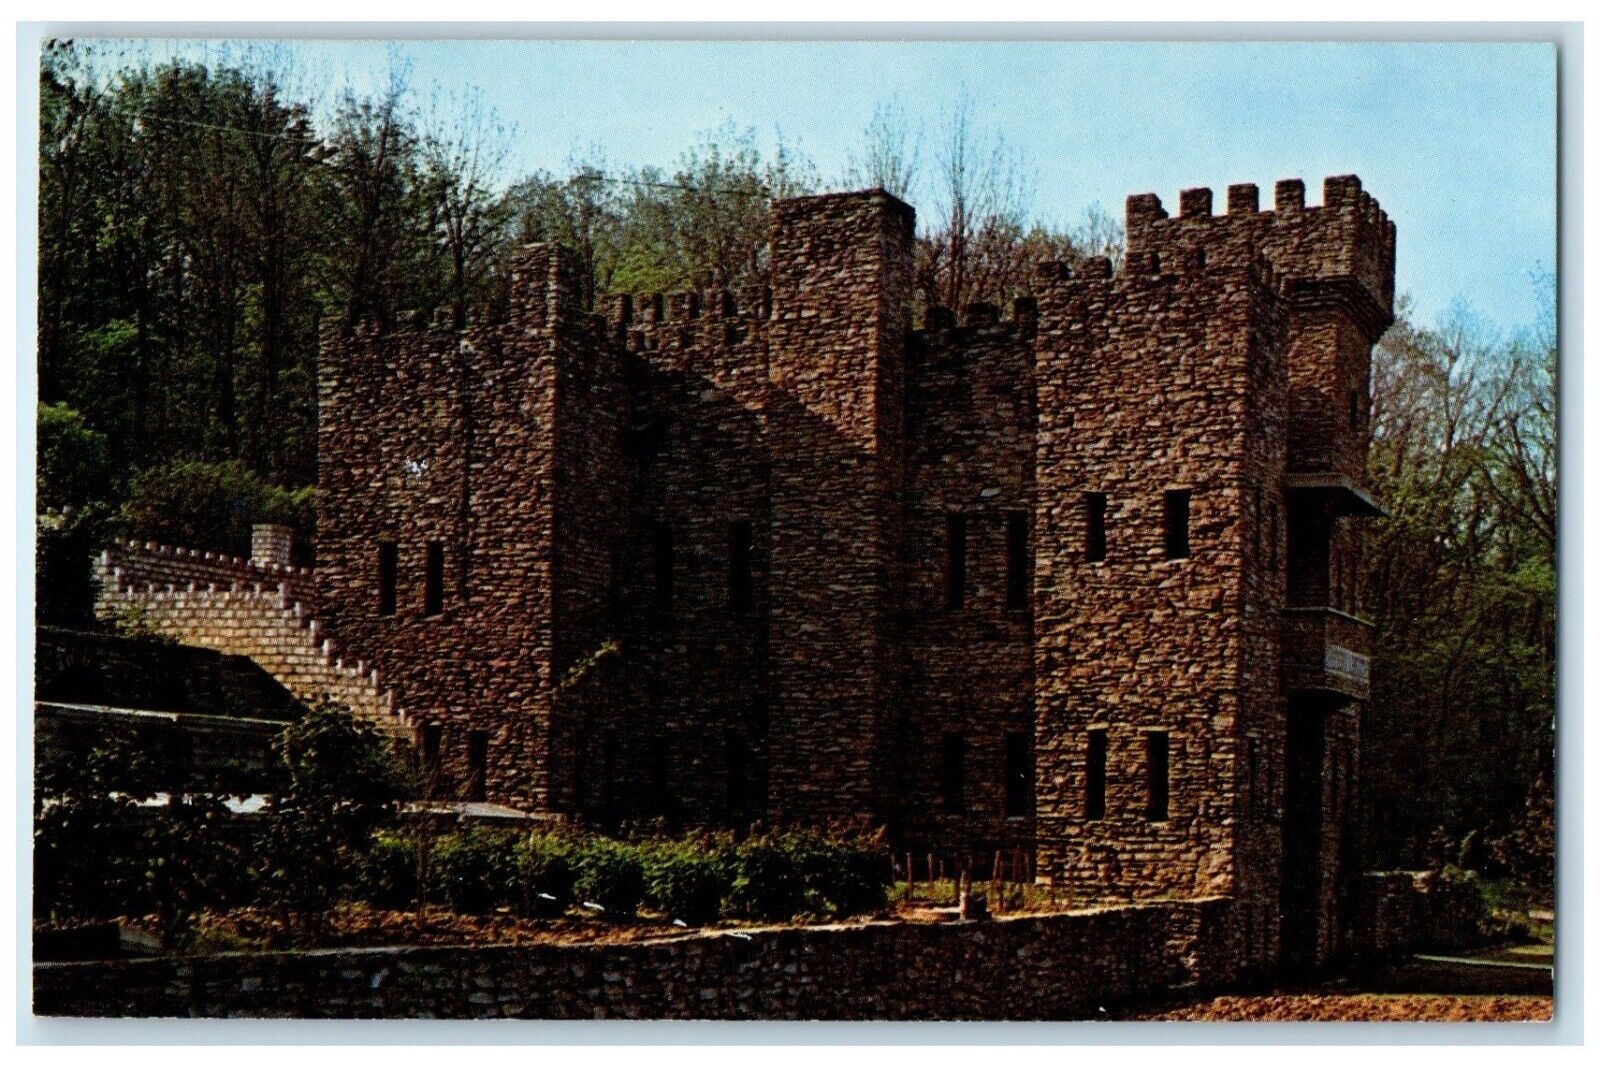 c1960 Chateau Laroche Poem Stone Castle Exterior Loveland Ohio Vintage Postcard